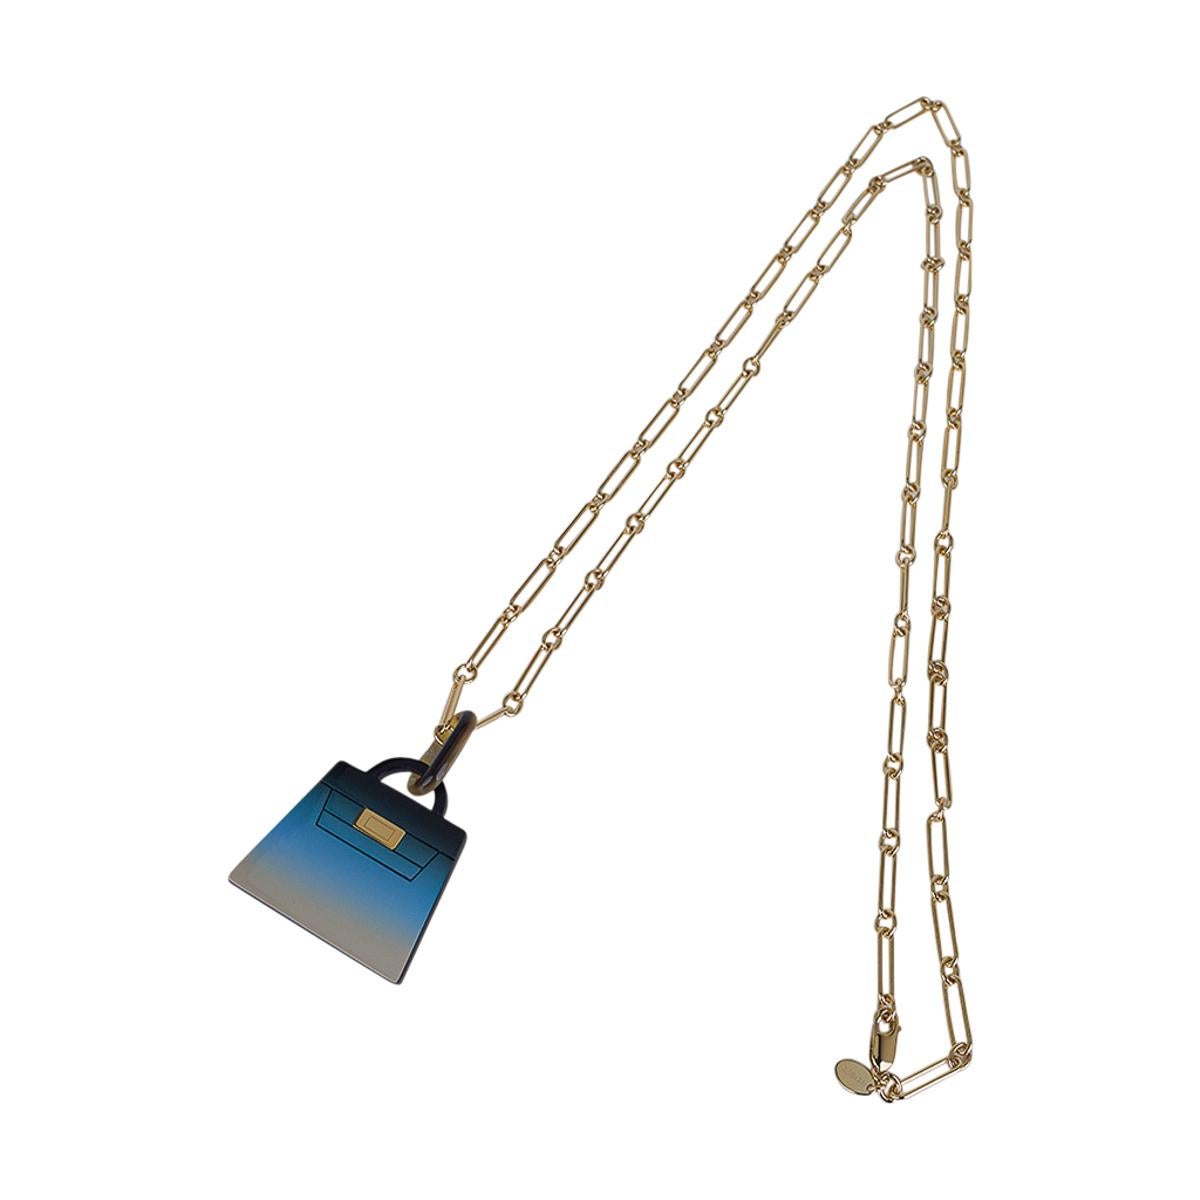 Mightychic propose un collier Hermes Fusion Kelly Pendentif présenté dans By The Sea.
Magnifiquement laqué dans des teintes allant du bleu au sable de plage.
Cette technique de laquage spéciale est accentuée par un collier à maillons